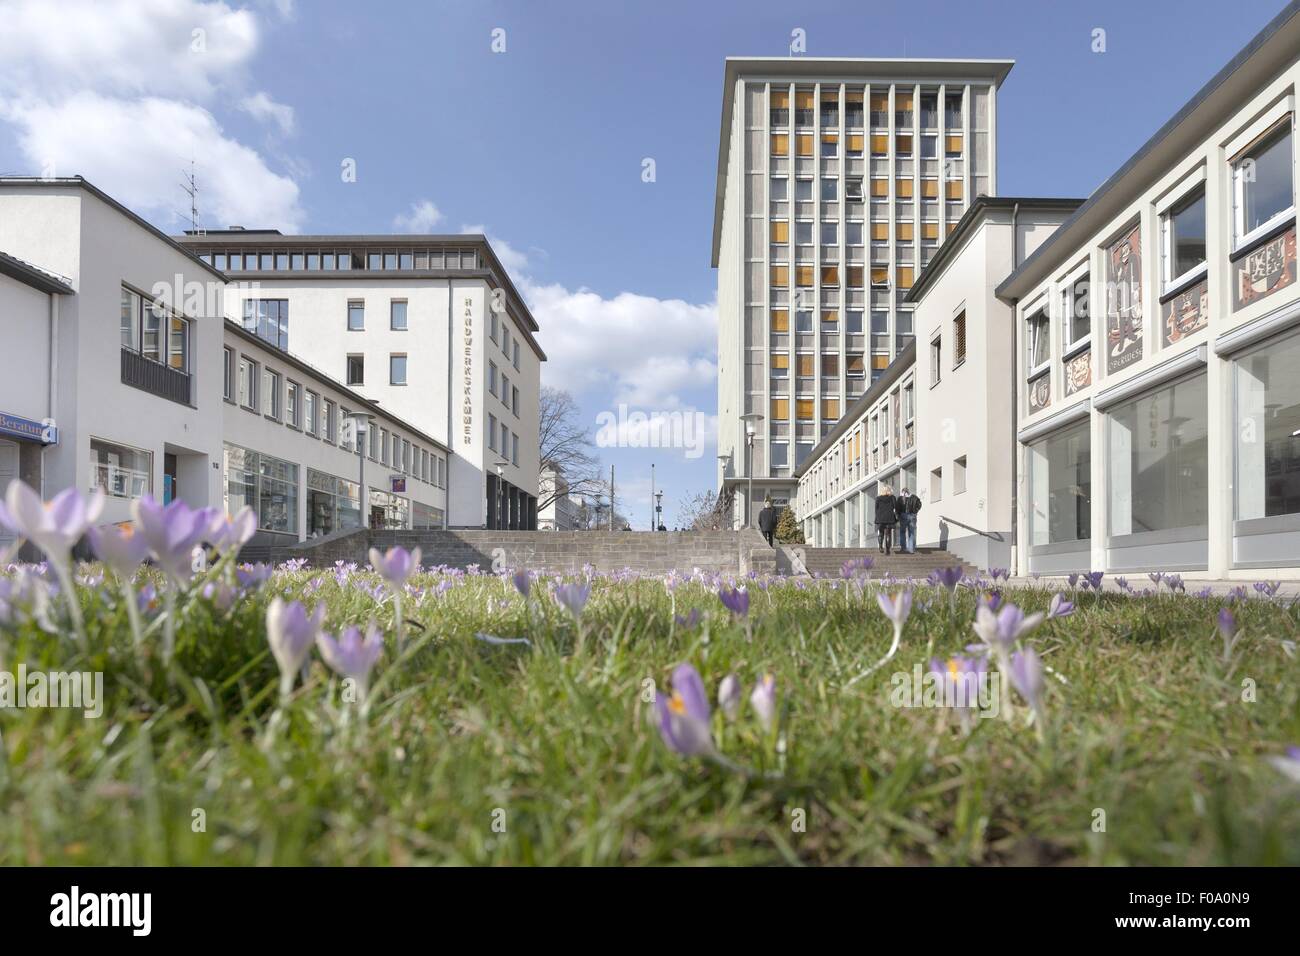 Fußgänger- und Gebäude in Kassel, Hessen, Deutschland Stockfoto